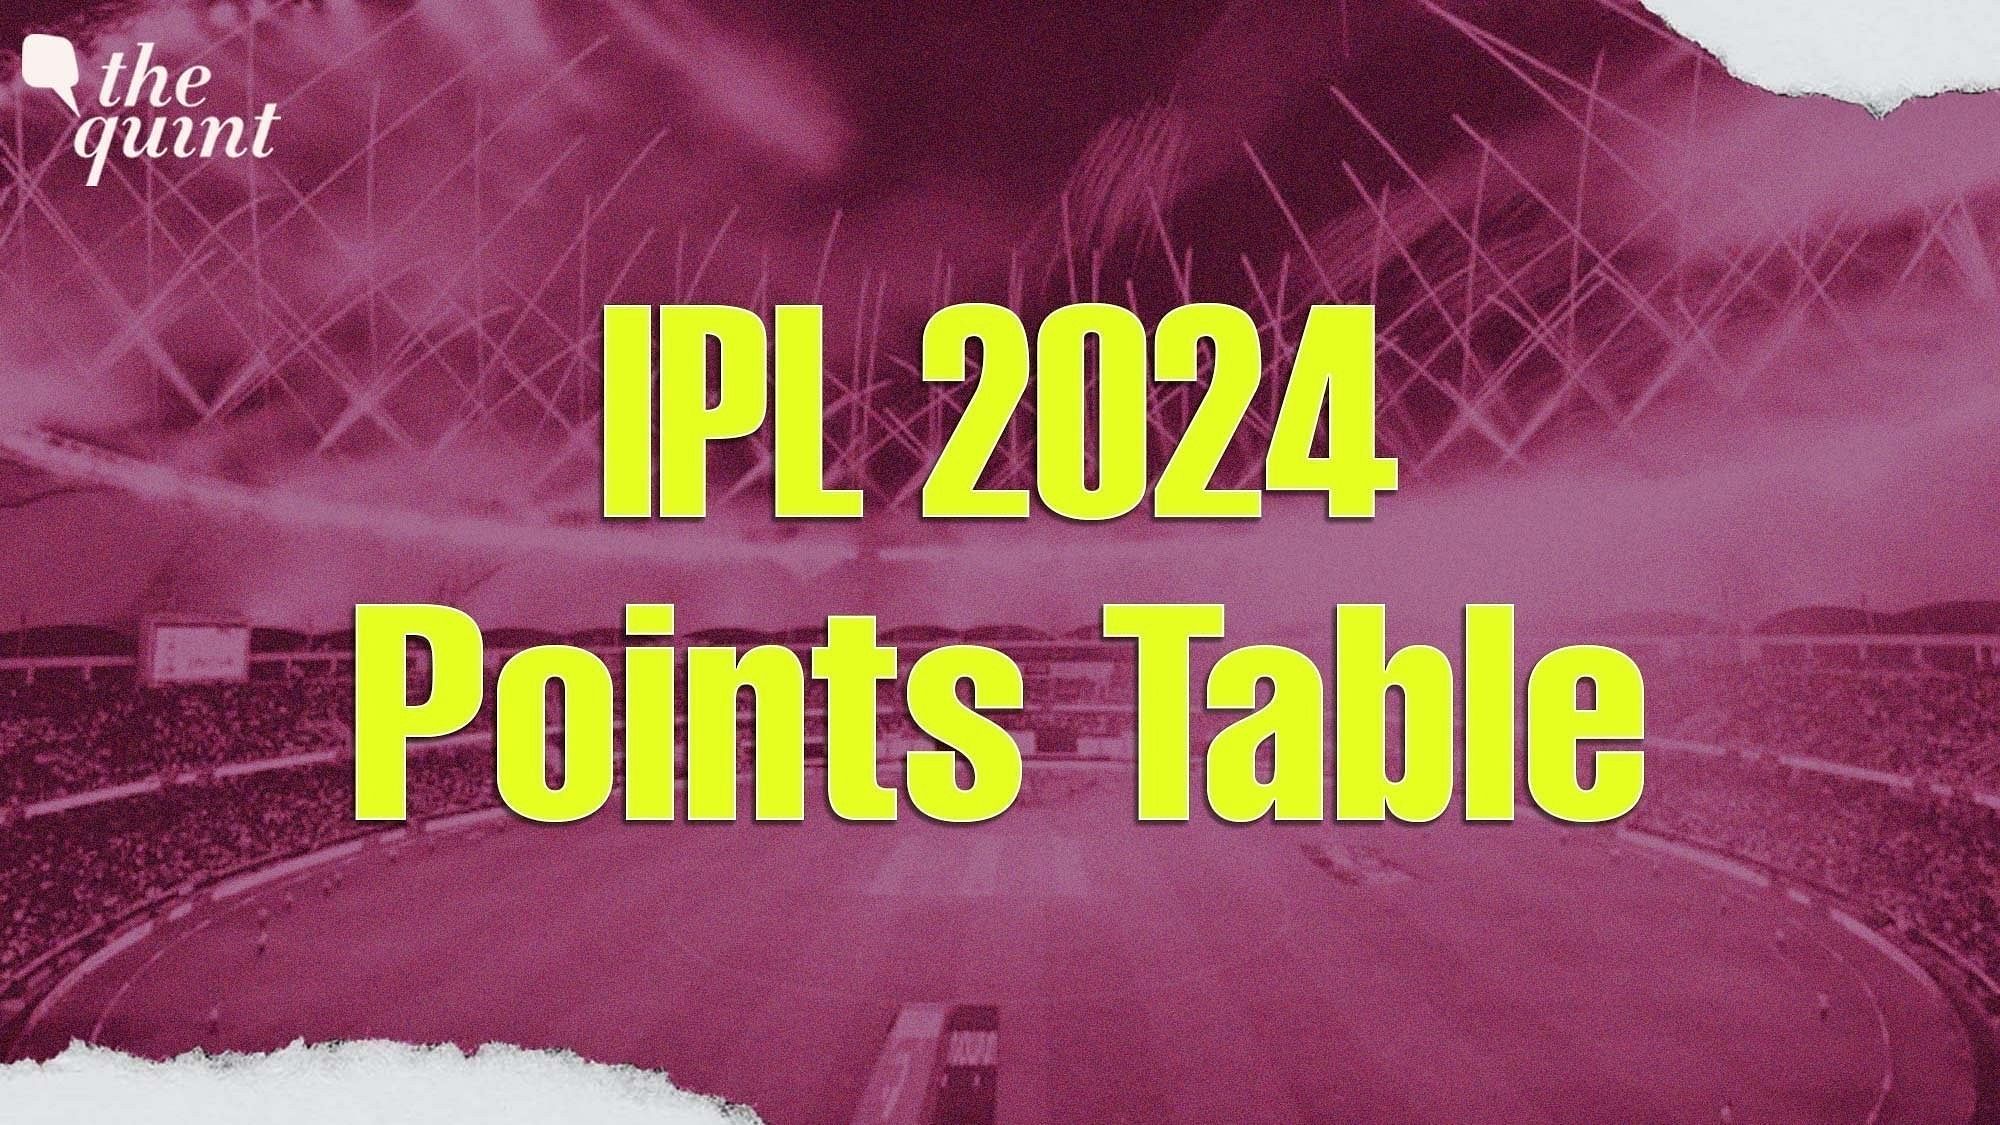 <div class="paragraphs"><p>IPL 2024 Points Table After RR vs MI match on 22 April 2024.</p></div>